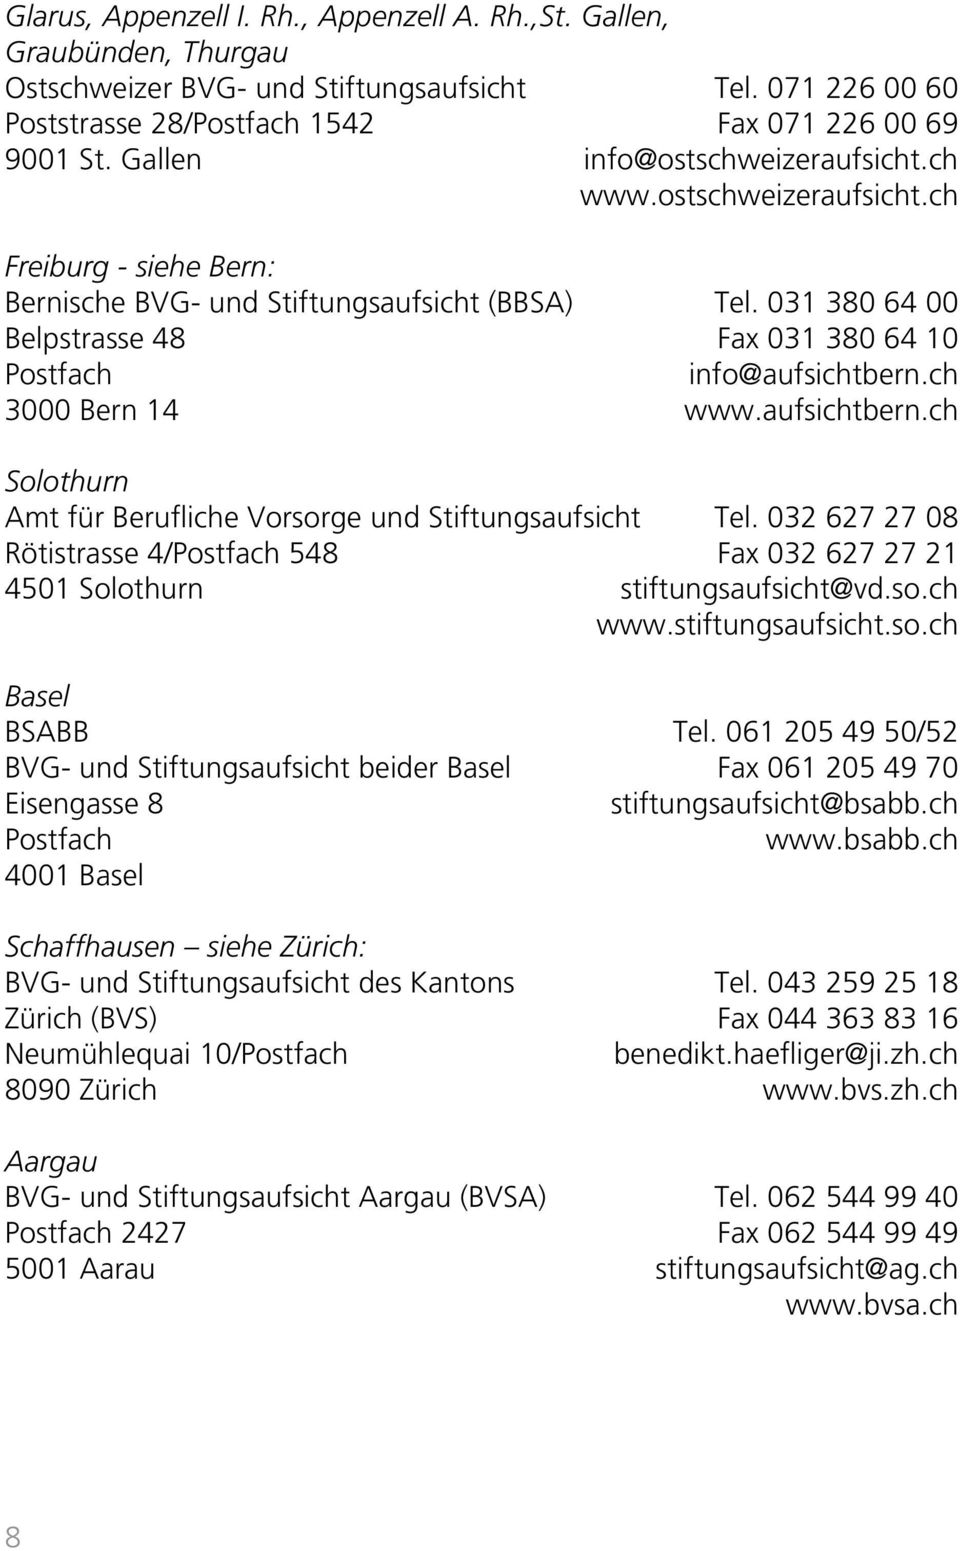 031 380 64 00 Belpstrasse 48 Fax 031 380 64 10 Postfach info@aufsichtbern.ch 3000 Bern 14 www.aufsichtbern.ch Solothurn Amt für Berufliche Vorsorge und Stiftungsaufsicht Tel.